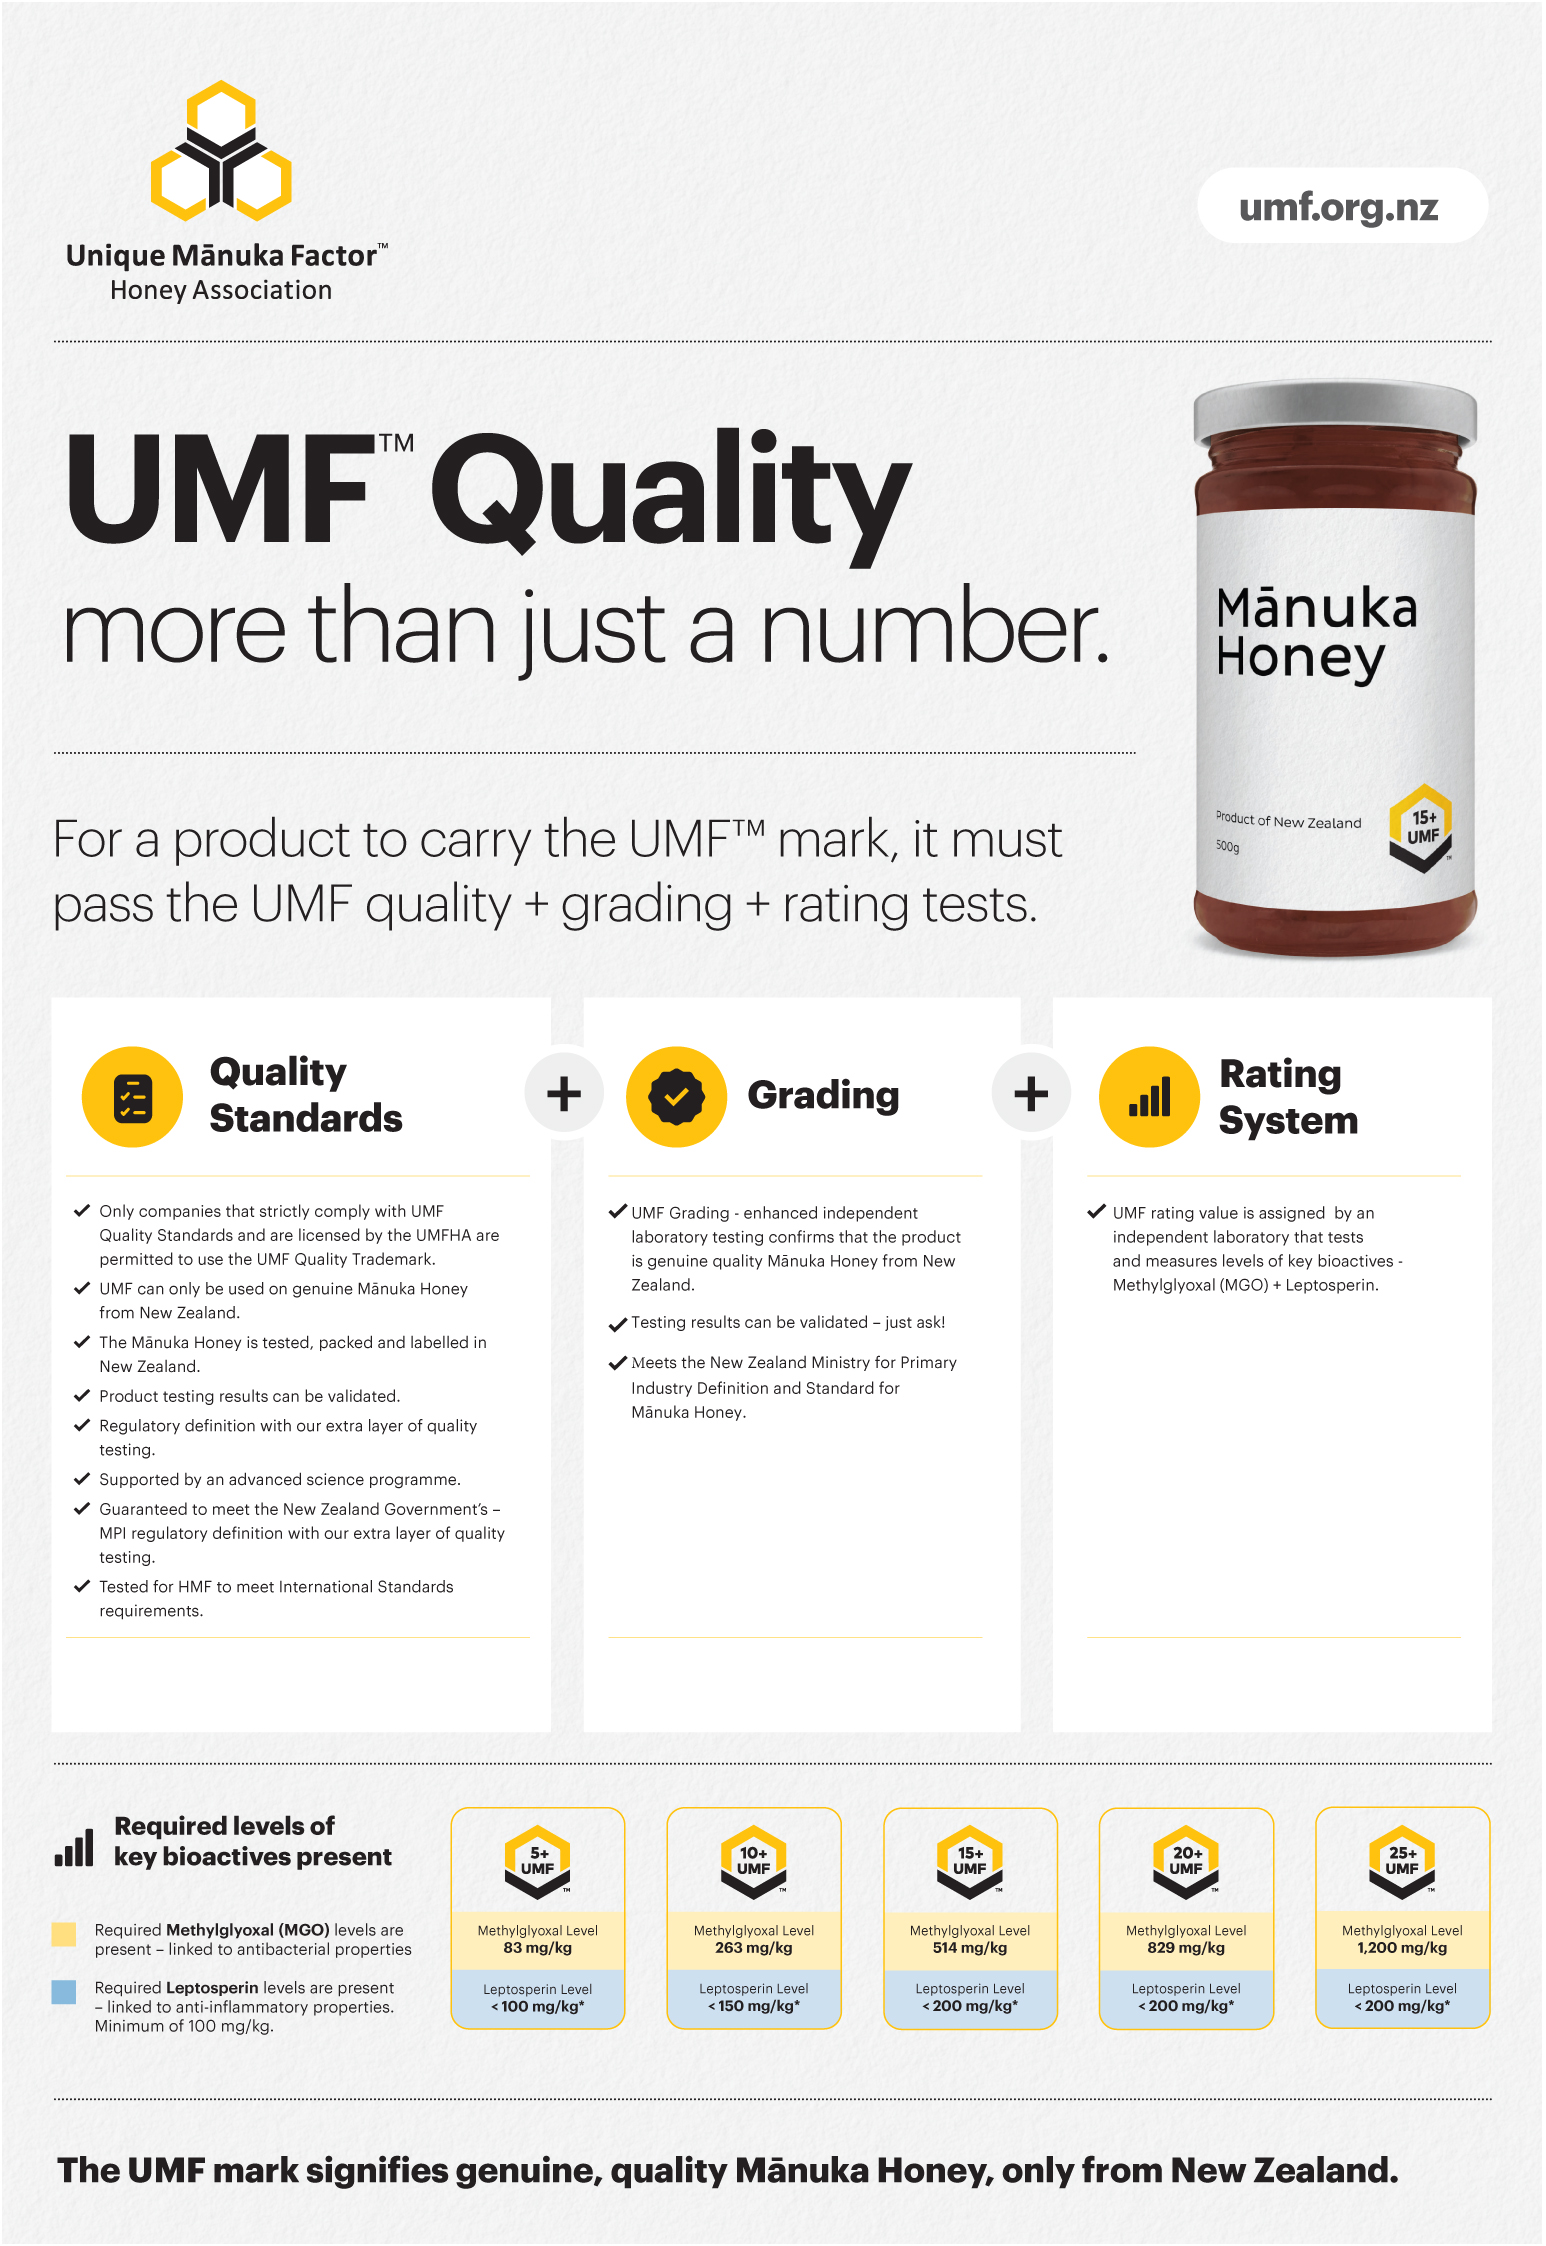 UMF (Unique Manuka Factor)